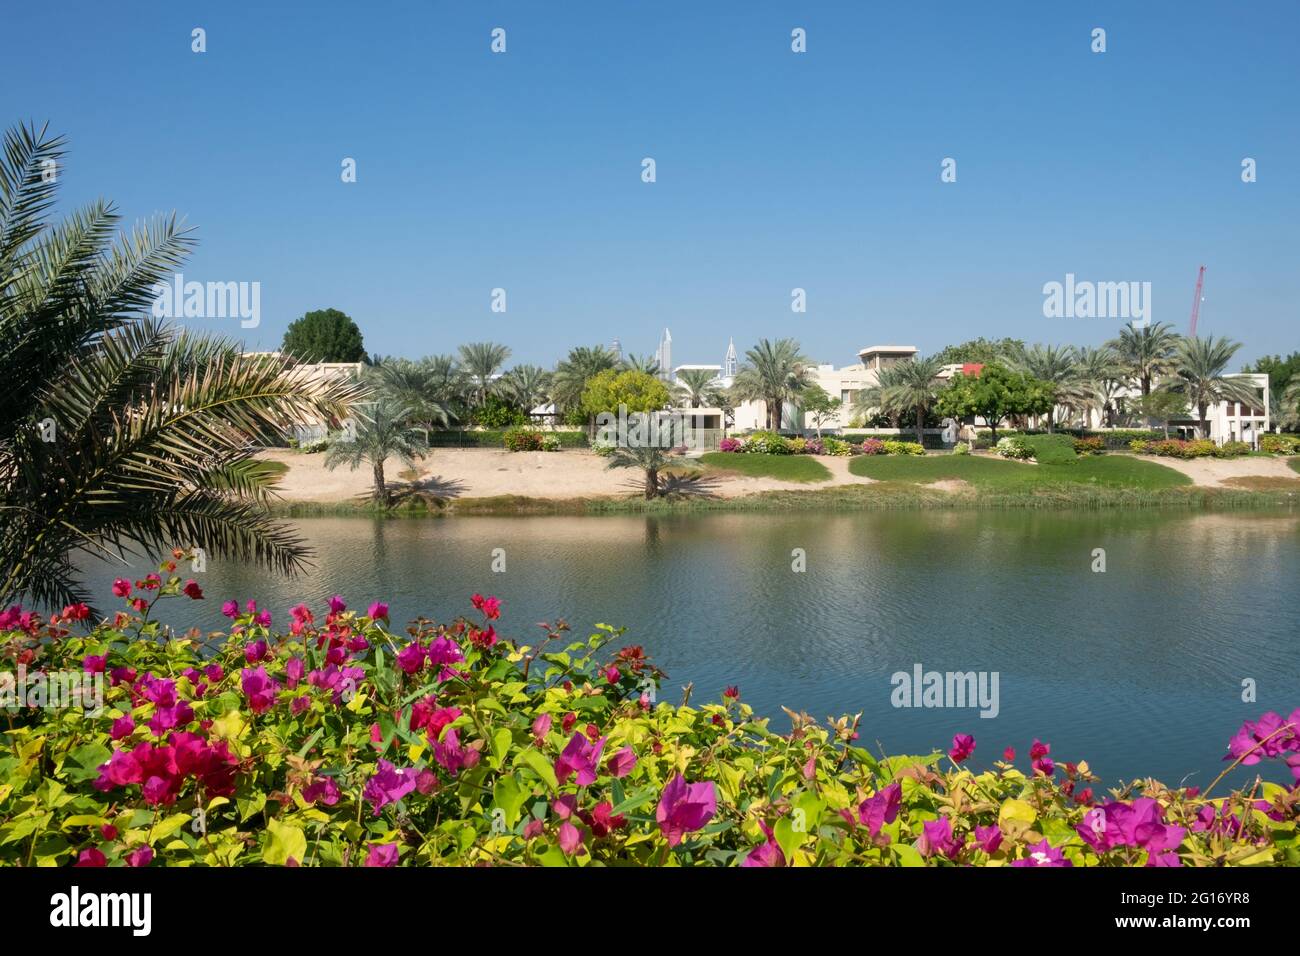 Laghi e arbusti colorati creano un ambiente lussureggiante nelle Emirates Hills, dove molti ricchi e famosi hanno la loro residenza di Dubai, Dubai, Emirati Arabi Uniti, 3.12 Foto Stock